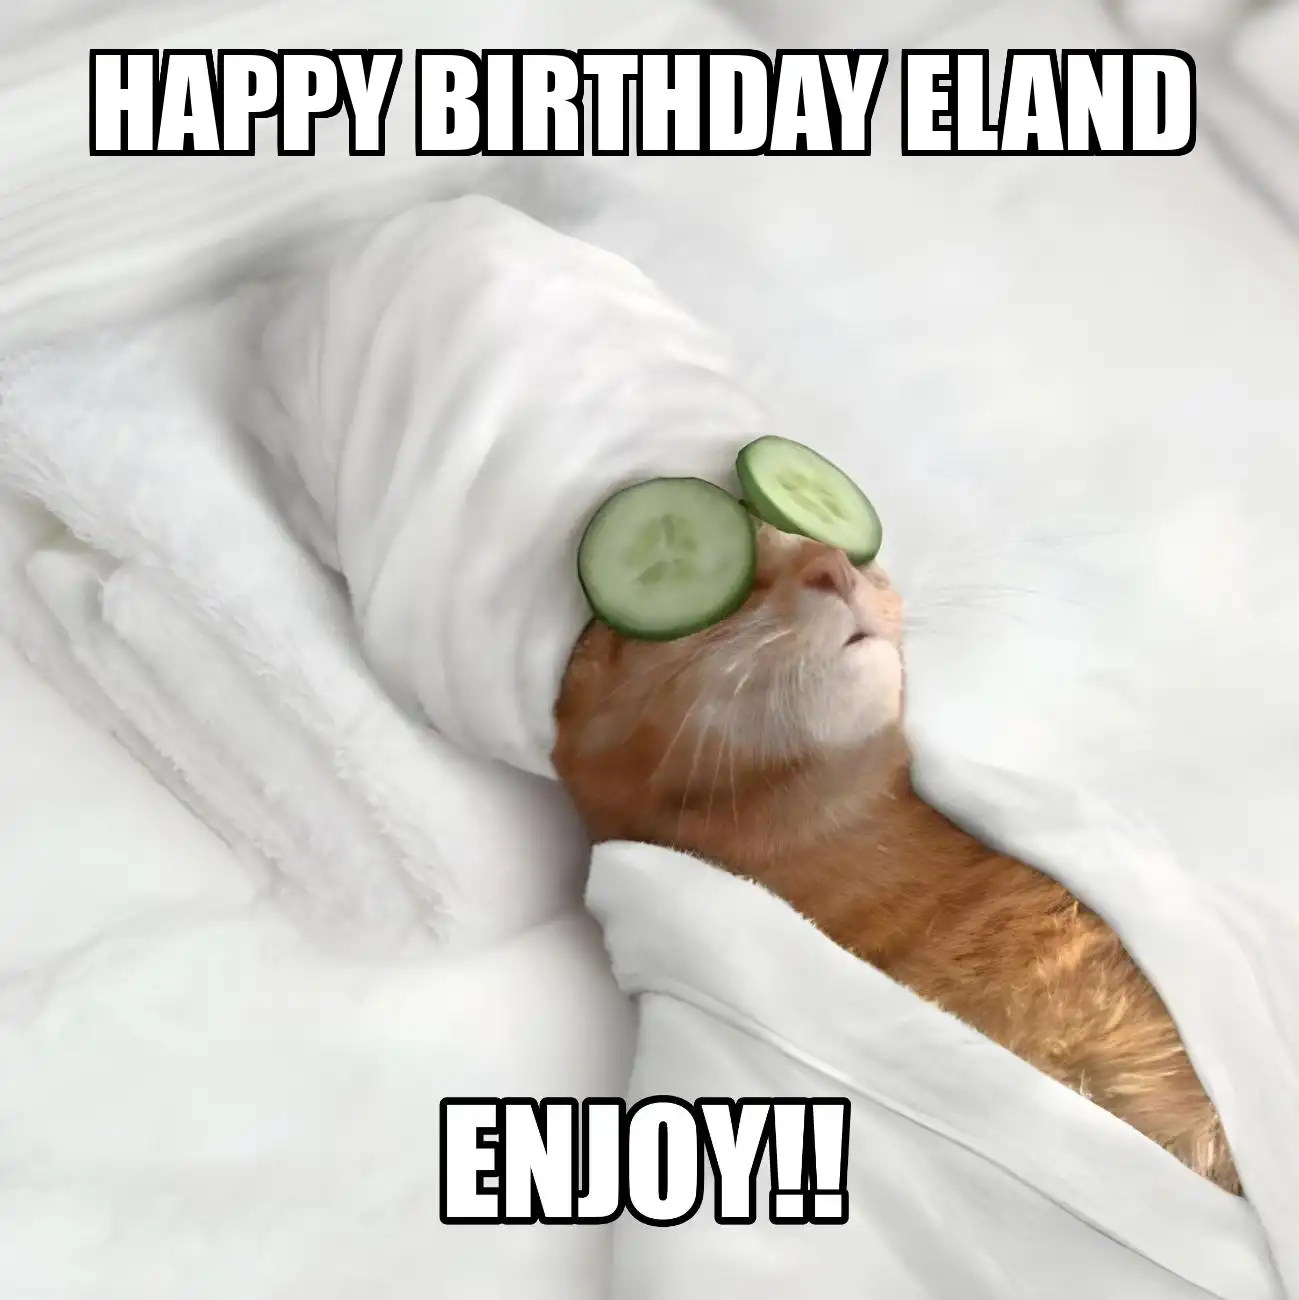 Happy Birthday Eland Enjoy Cat Meme